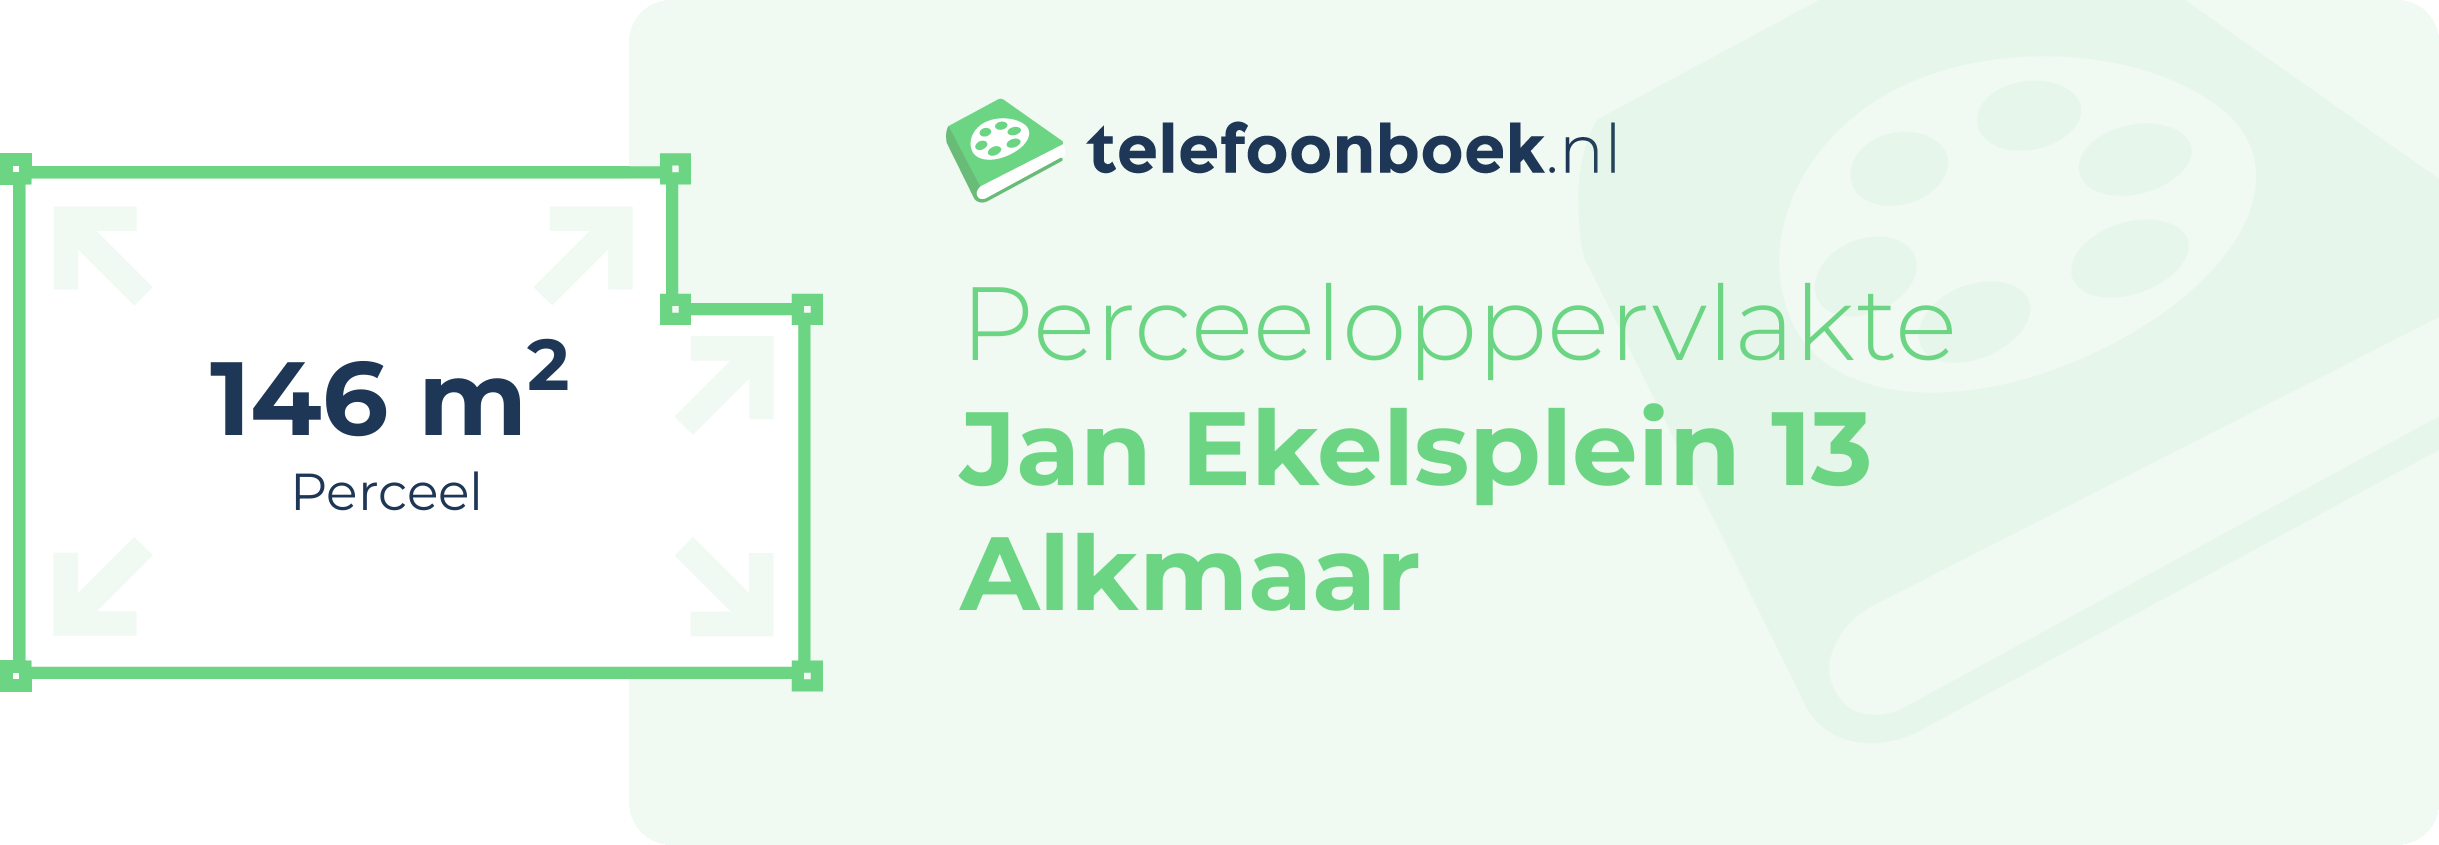 Perceeloppervlakte Jan Ekelsplein 13 Alkmaar